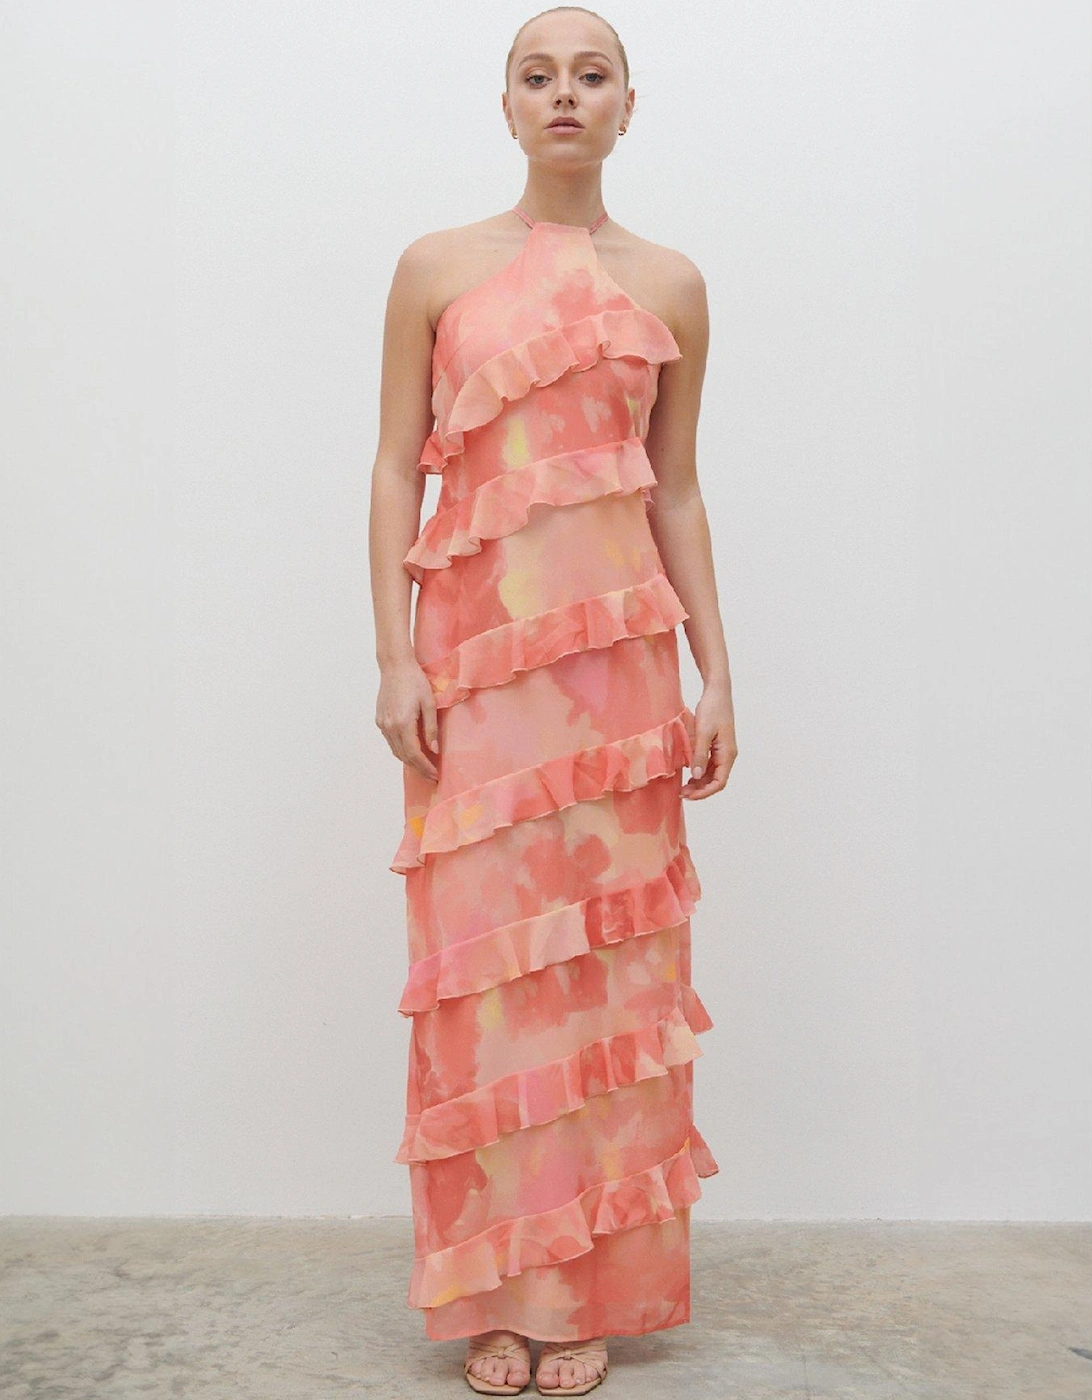 Katy Printed Ruffle Maxi Dress - Pink, 6 of 5